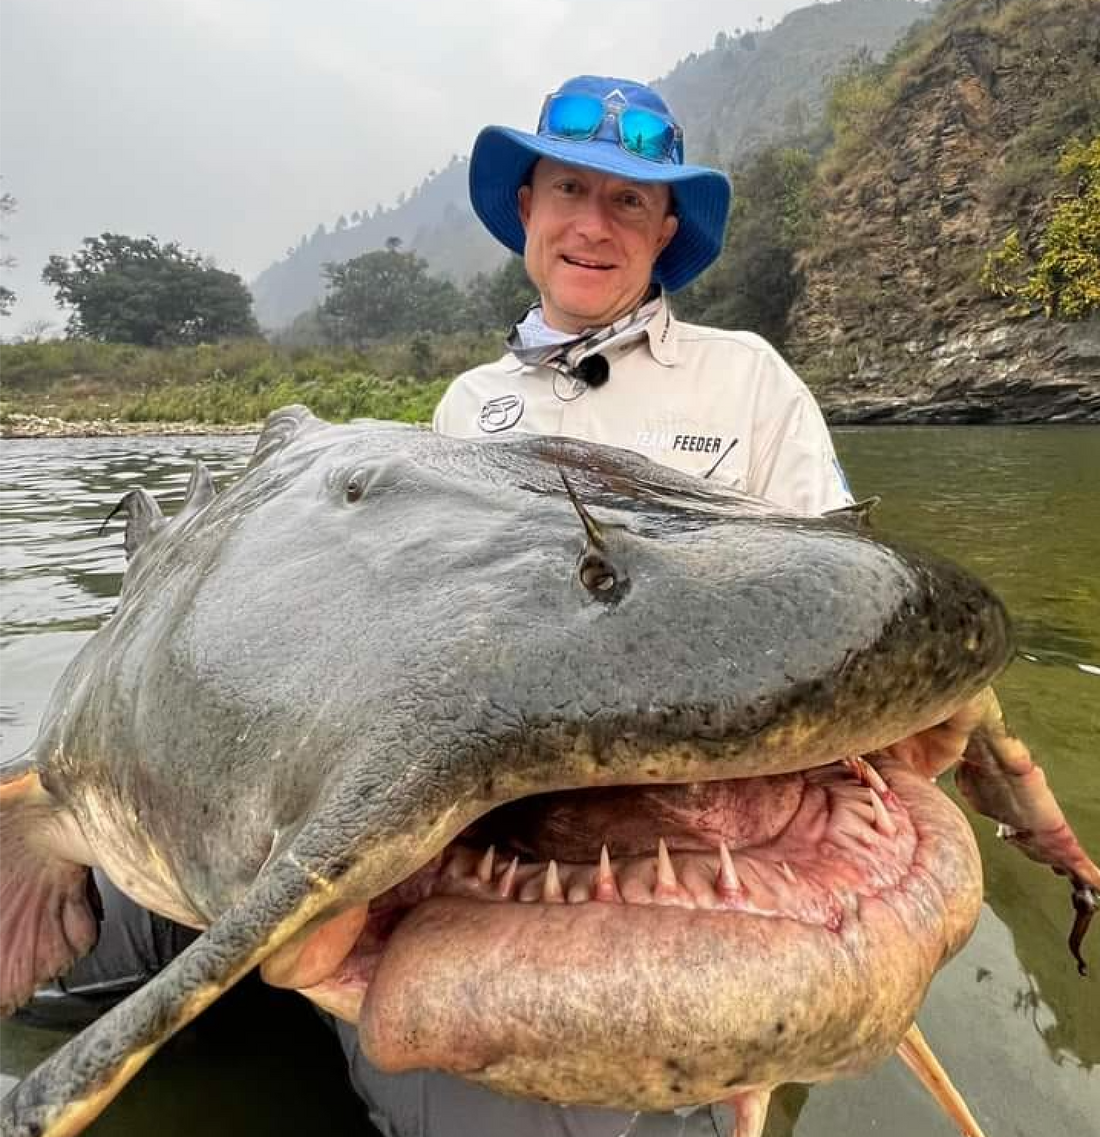 Un pêcheur affronte une créature marine cauchemardesque: un poisson gigantesque armé de redoutables dents acérées !